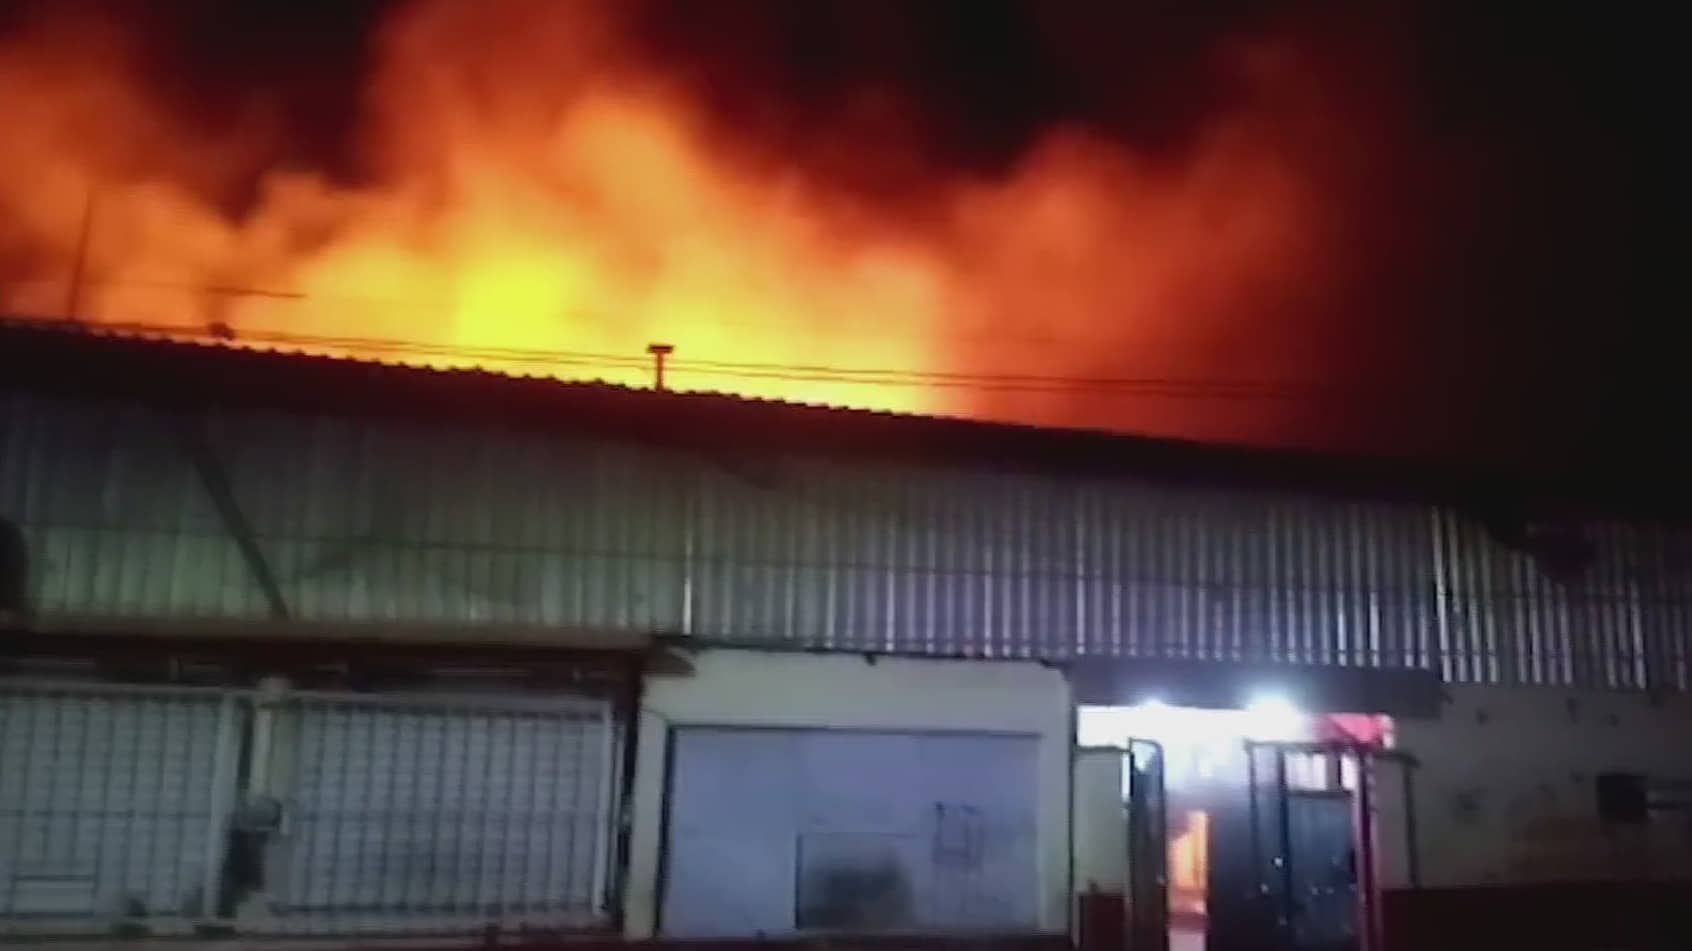 autoridades investigan las causas de incendio en central de abastos en comitan chiapas